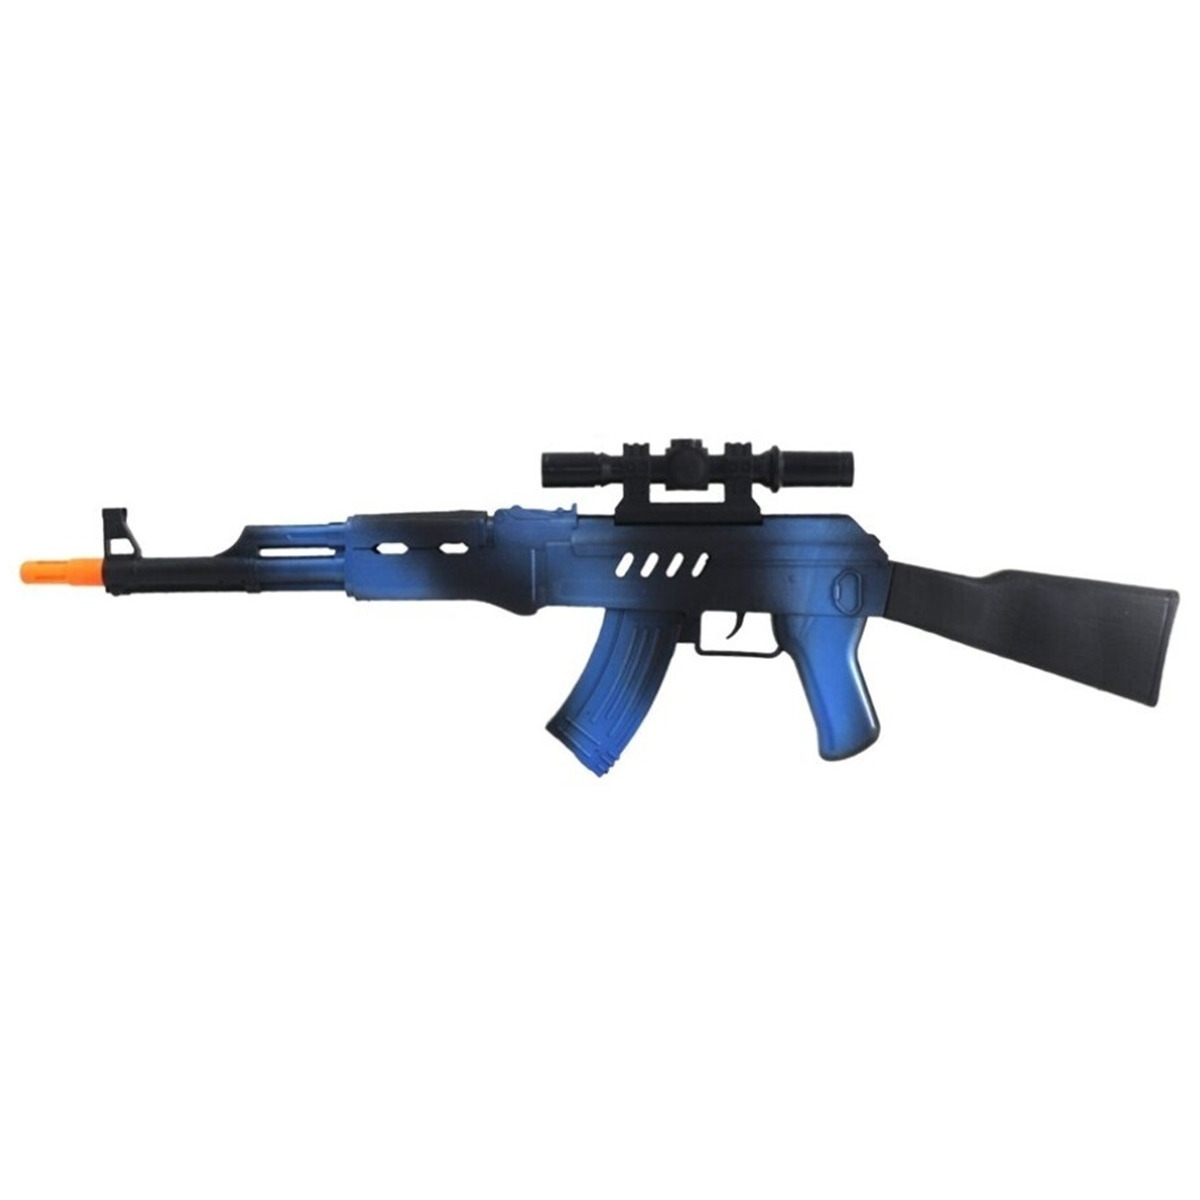 Verkleed speelgoed Politie-soldaten geweer machinegeweer zwart-blauw plastic 69 cm